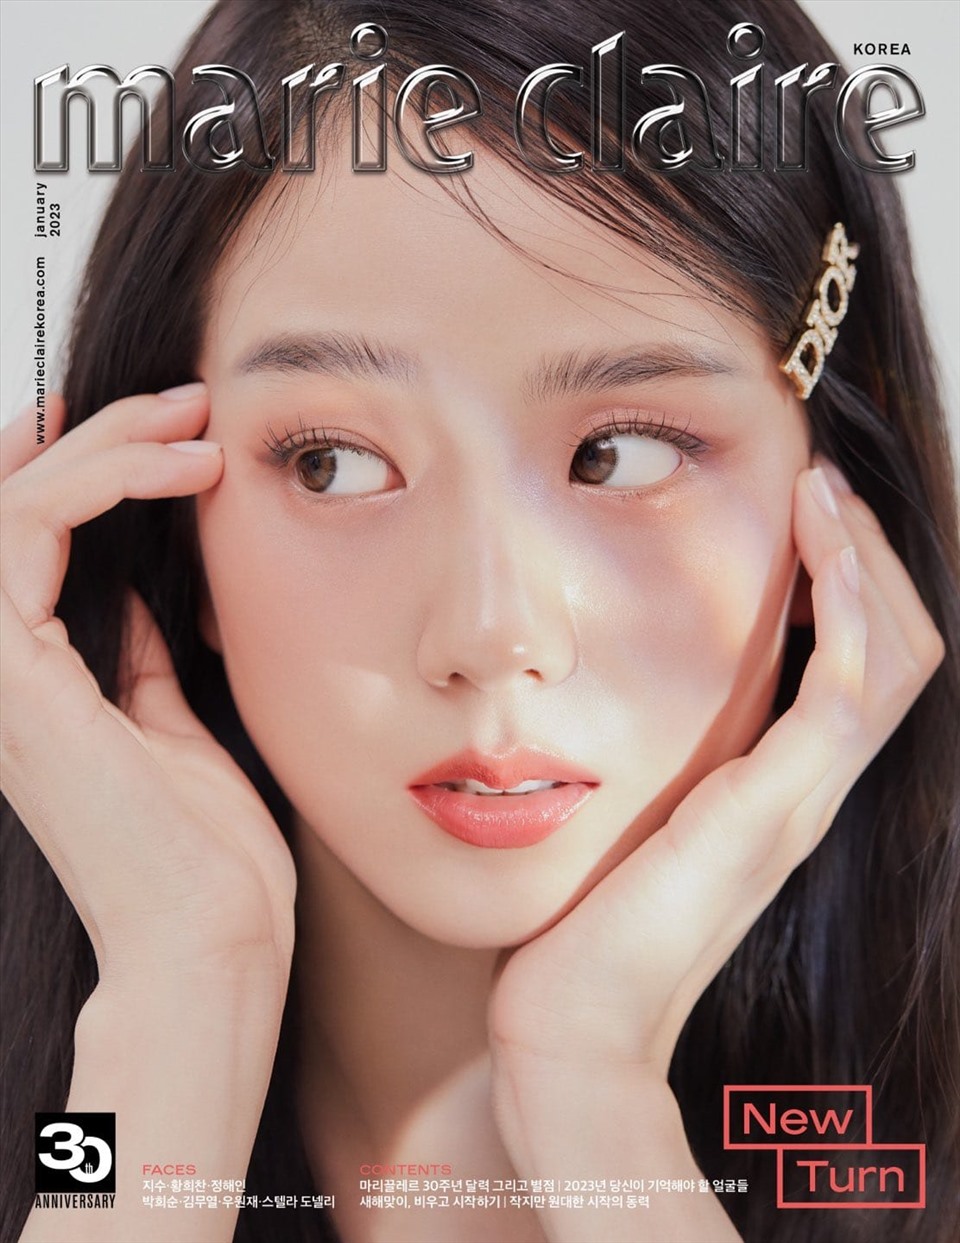 Poster tạp chí thể hiện chi tiết khuôn mặt xinh đẹp của Jisoo Blackpink